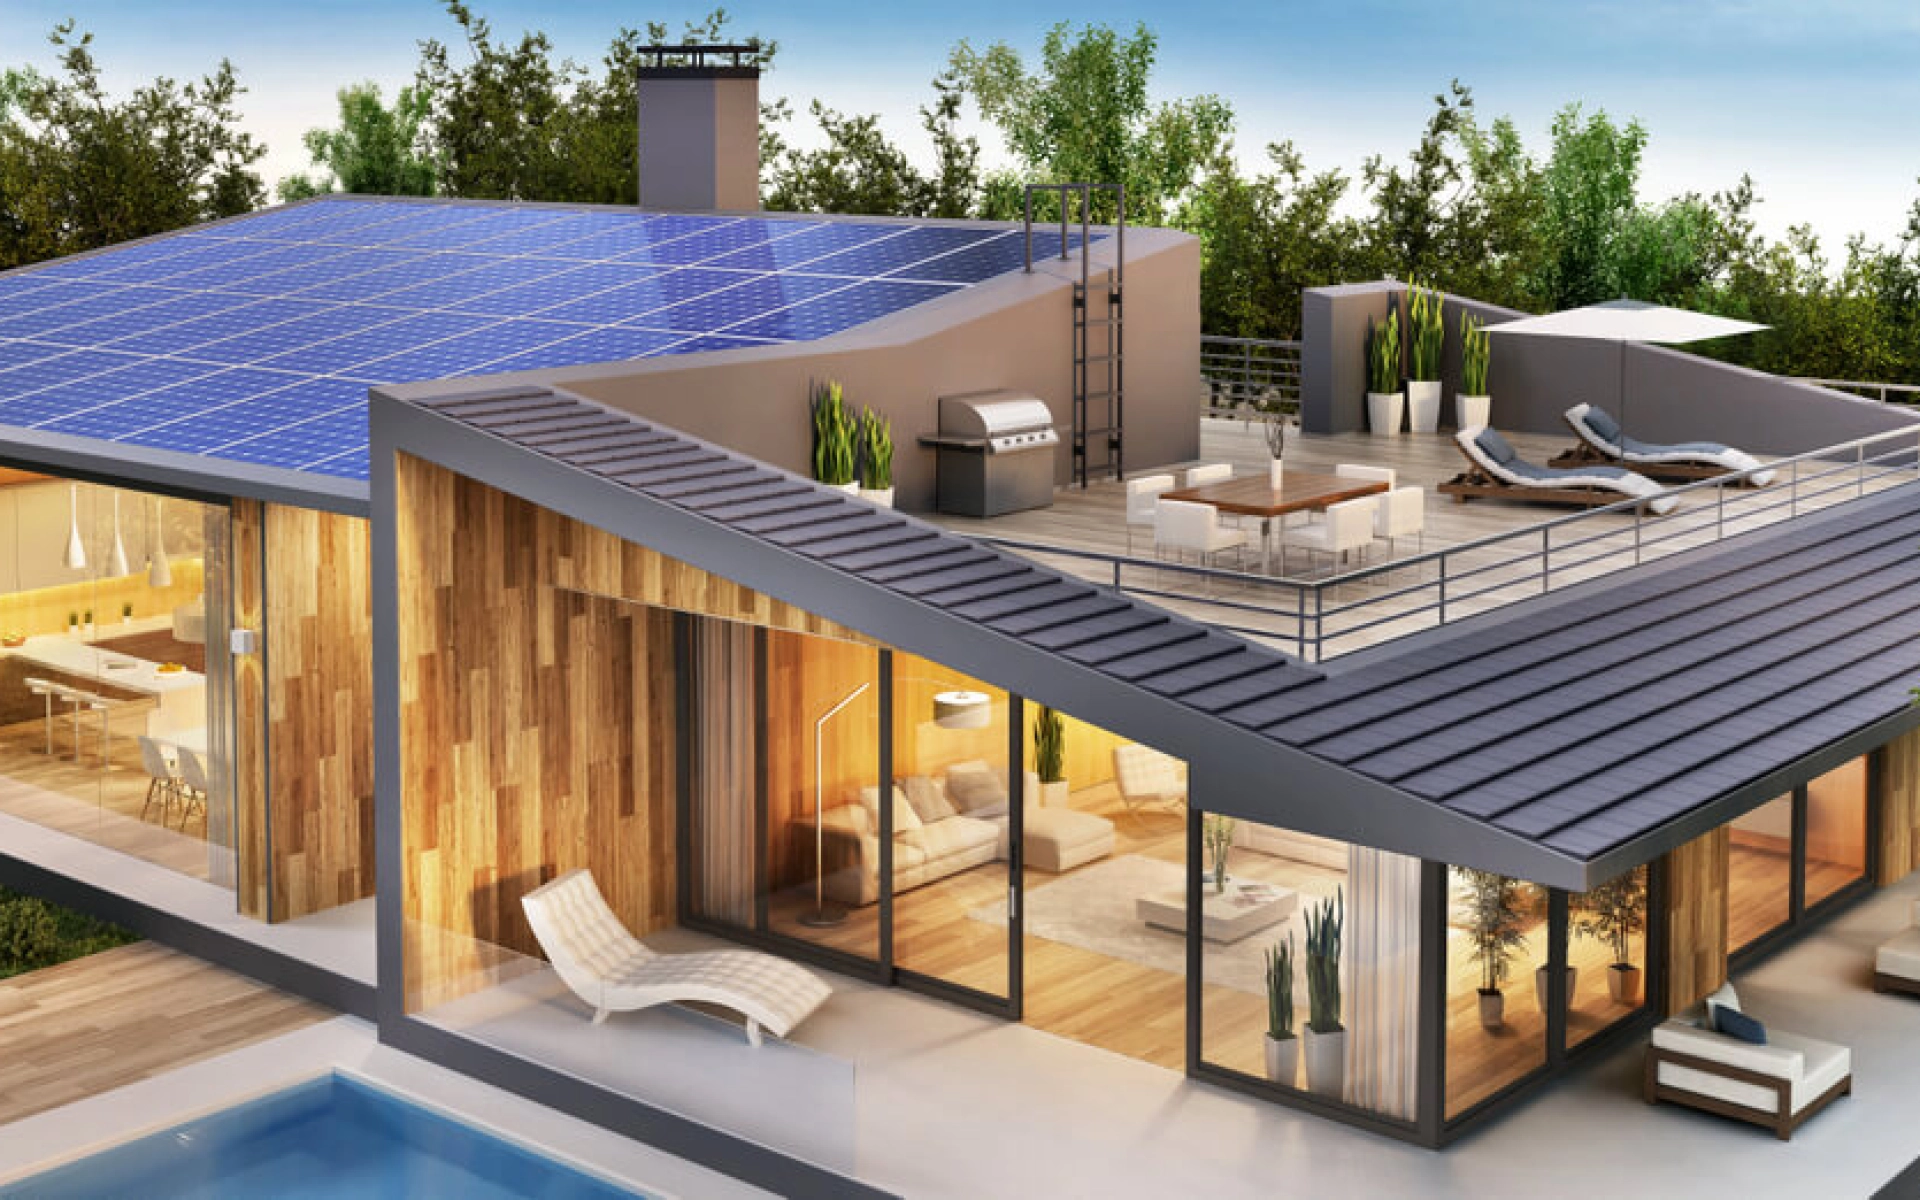 Modernes Wohnhaus mit Indach-Solar-Anlage. 